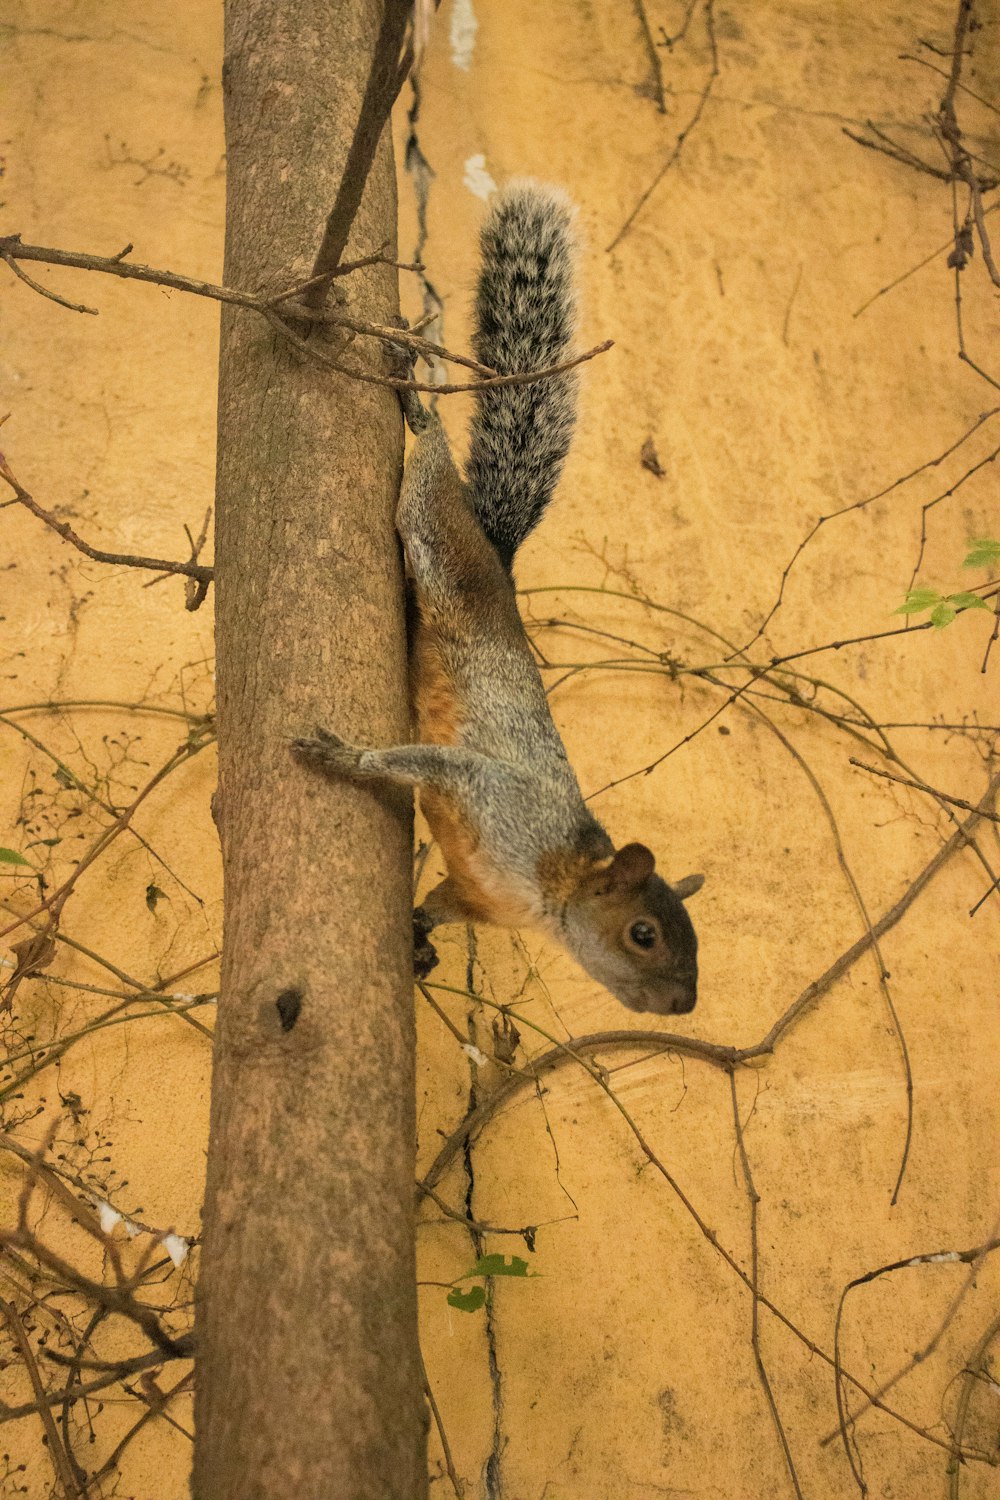 다람쥐 한 마리가 나뭇가지를 타고 올라가고 있다